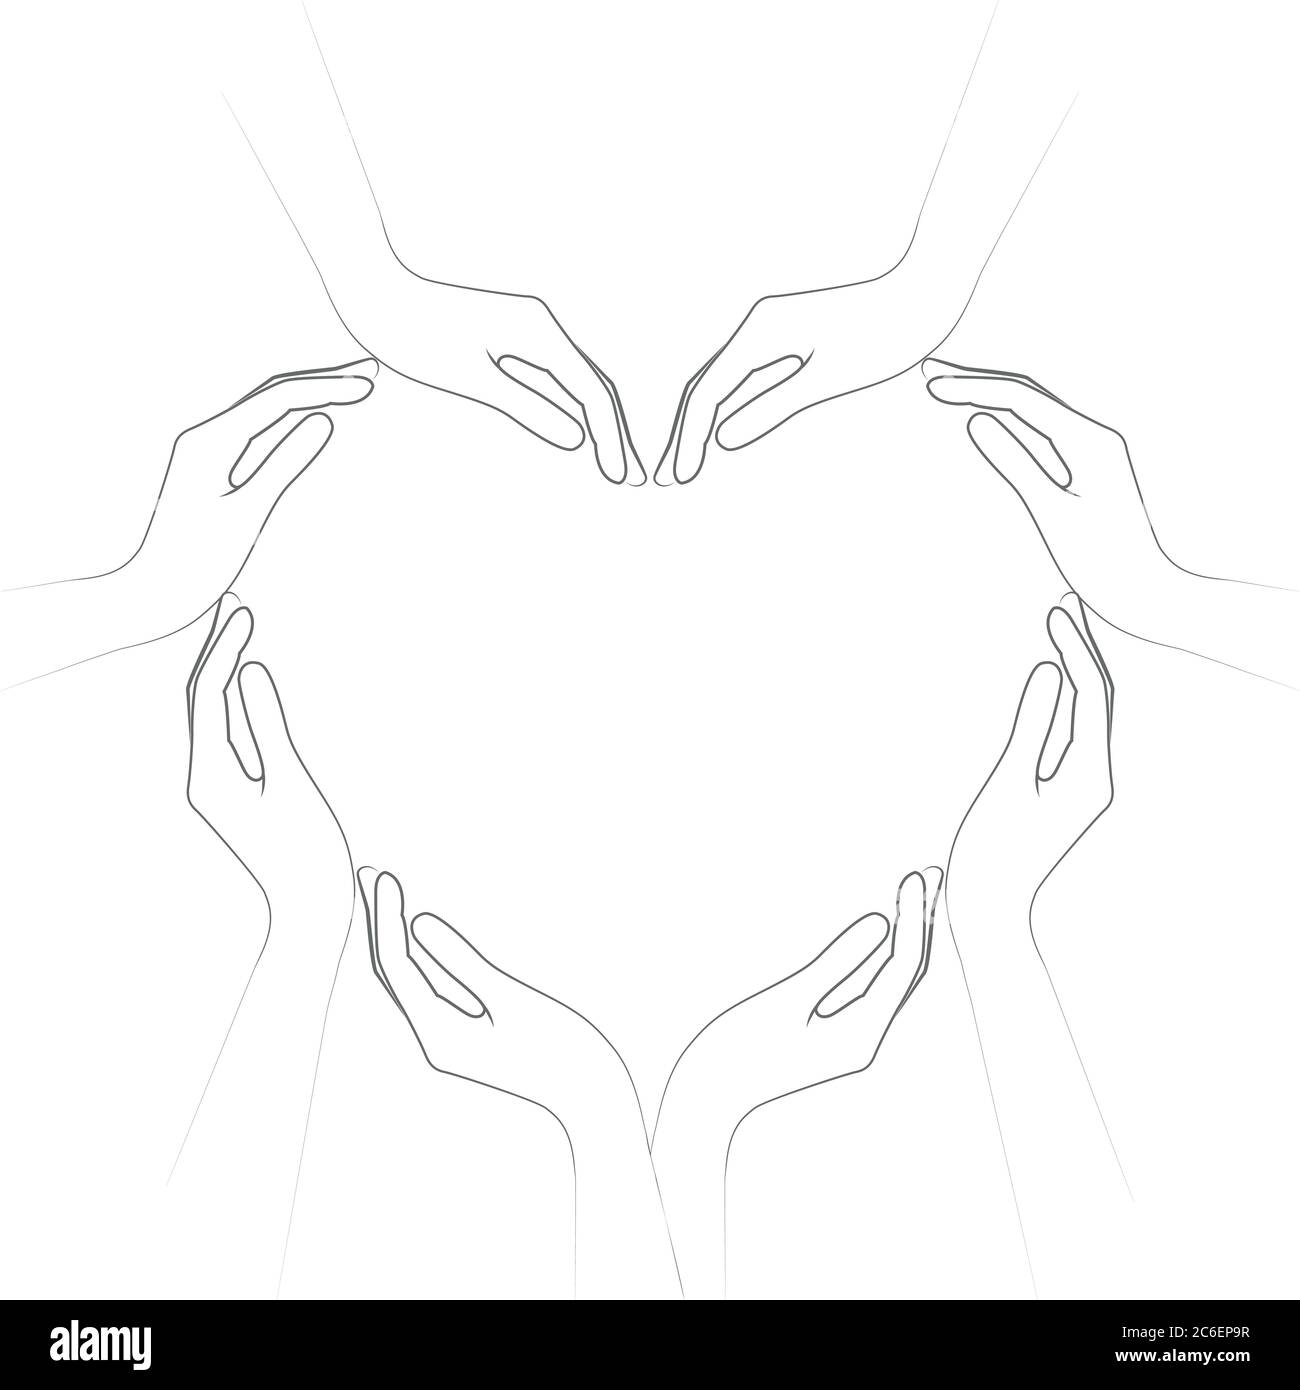 Menschliche Hände bilden ein Herz isoliert auf weißem Hintergrund Vektor-Illustration EPS10 Stock Vektor